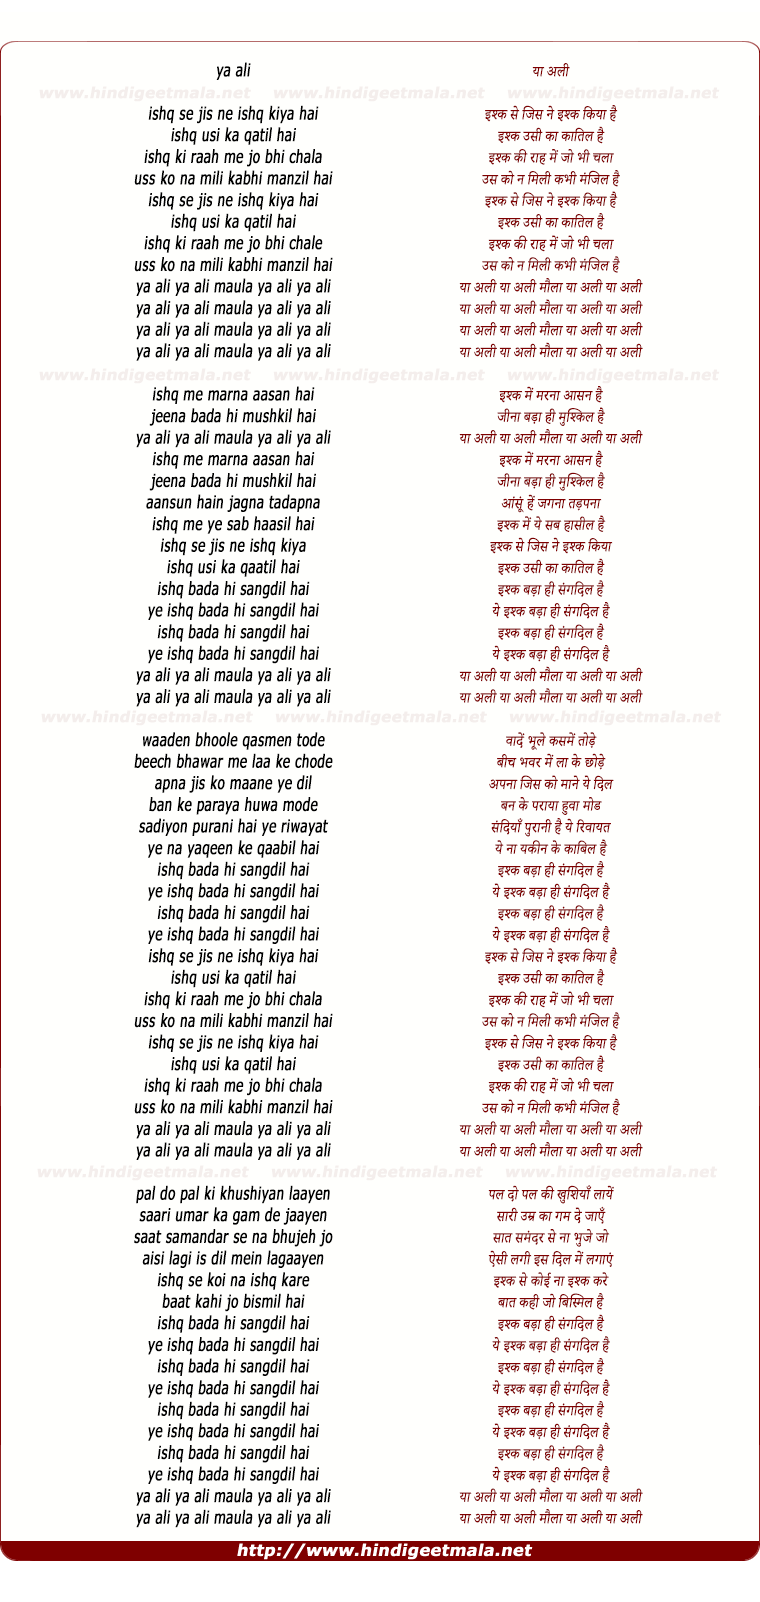 lyrics of song Ishq Badaa Sangdil